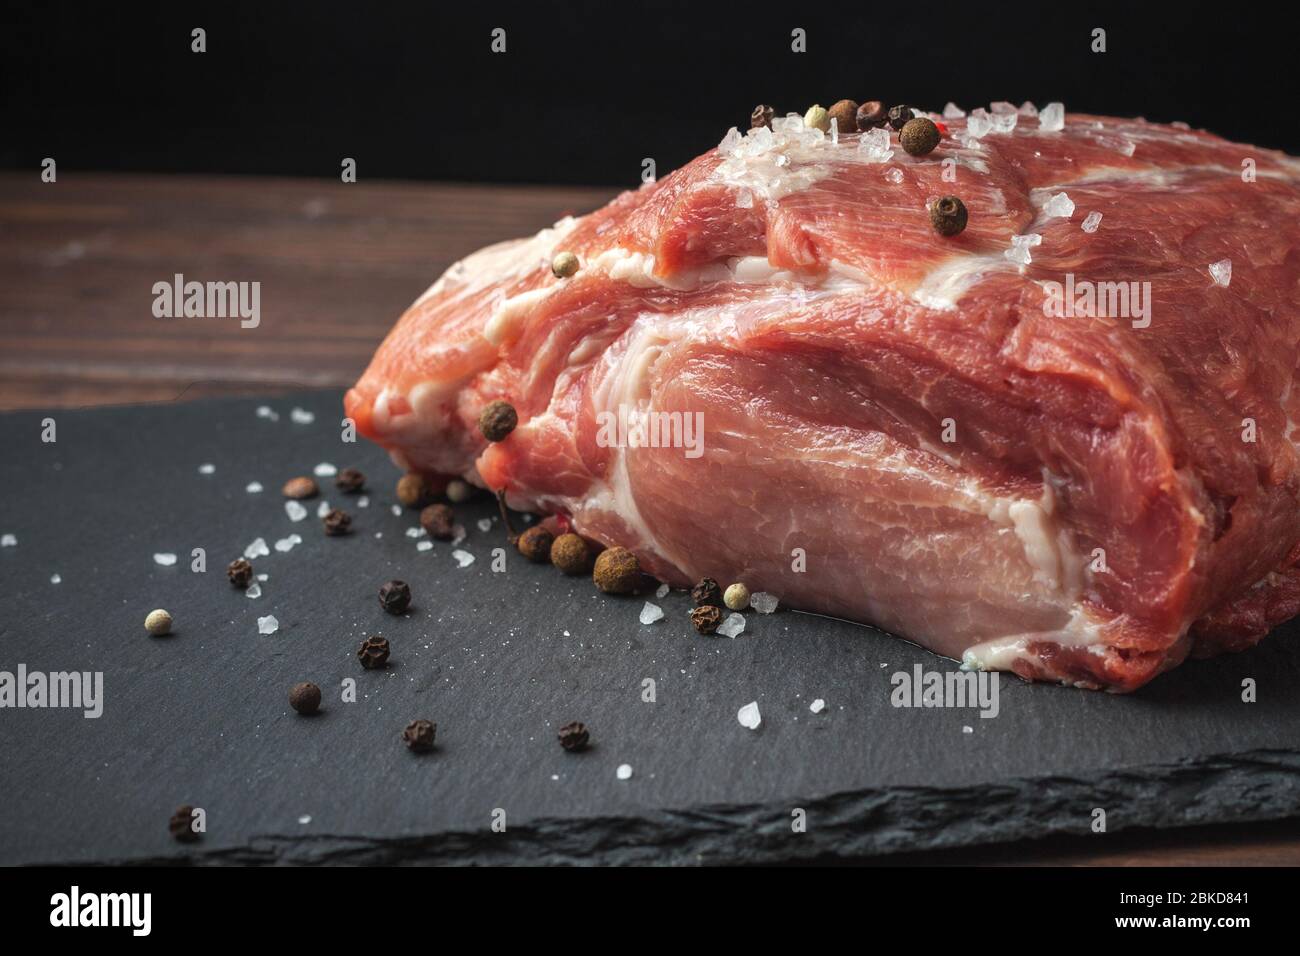 Rohes Schweinefleisch hacken Steak auf einem schwarzen Brett. Schweinehandrikot. Fleisch Stockfoto